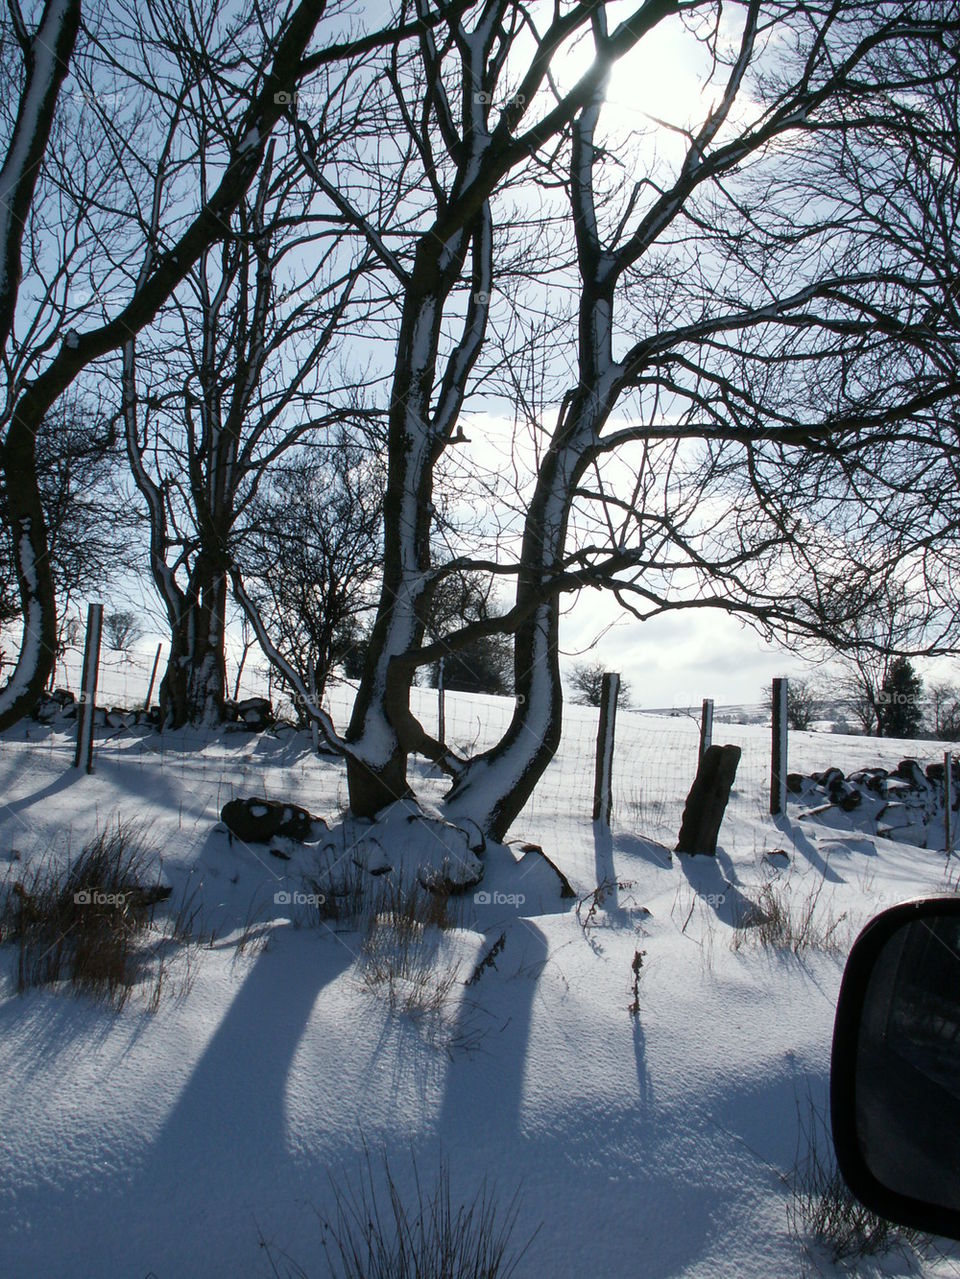 Snow clad trees